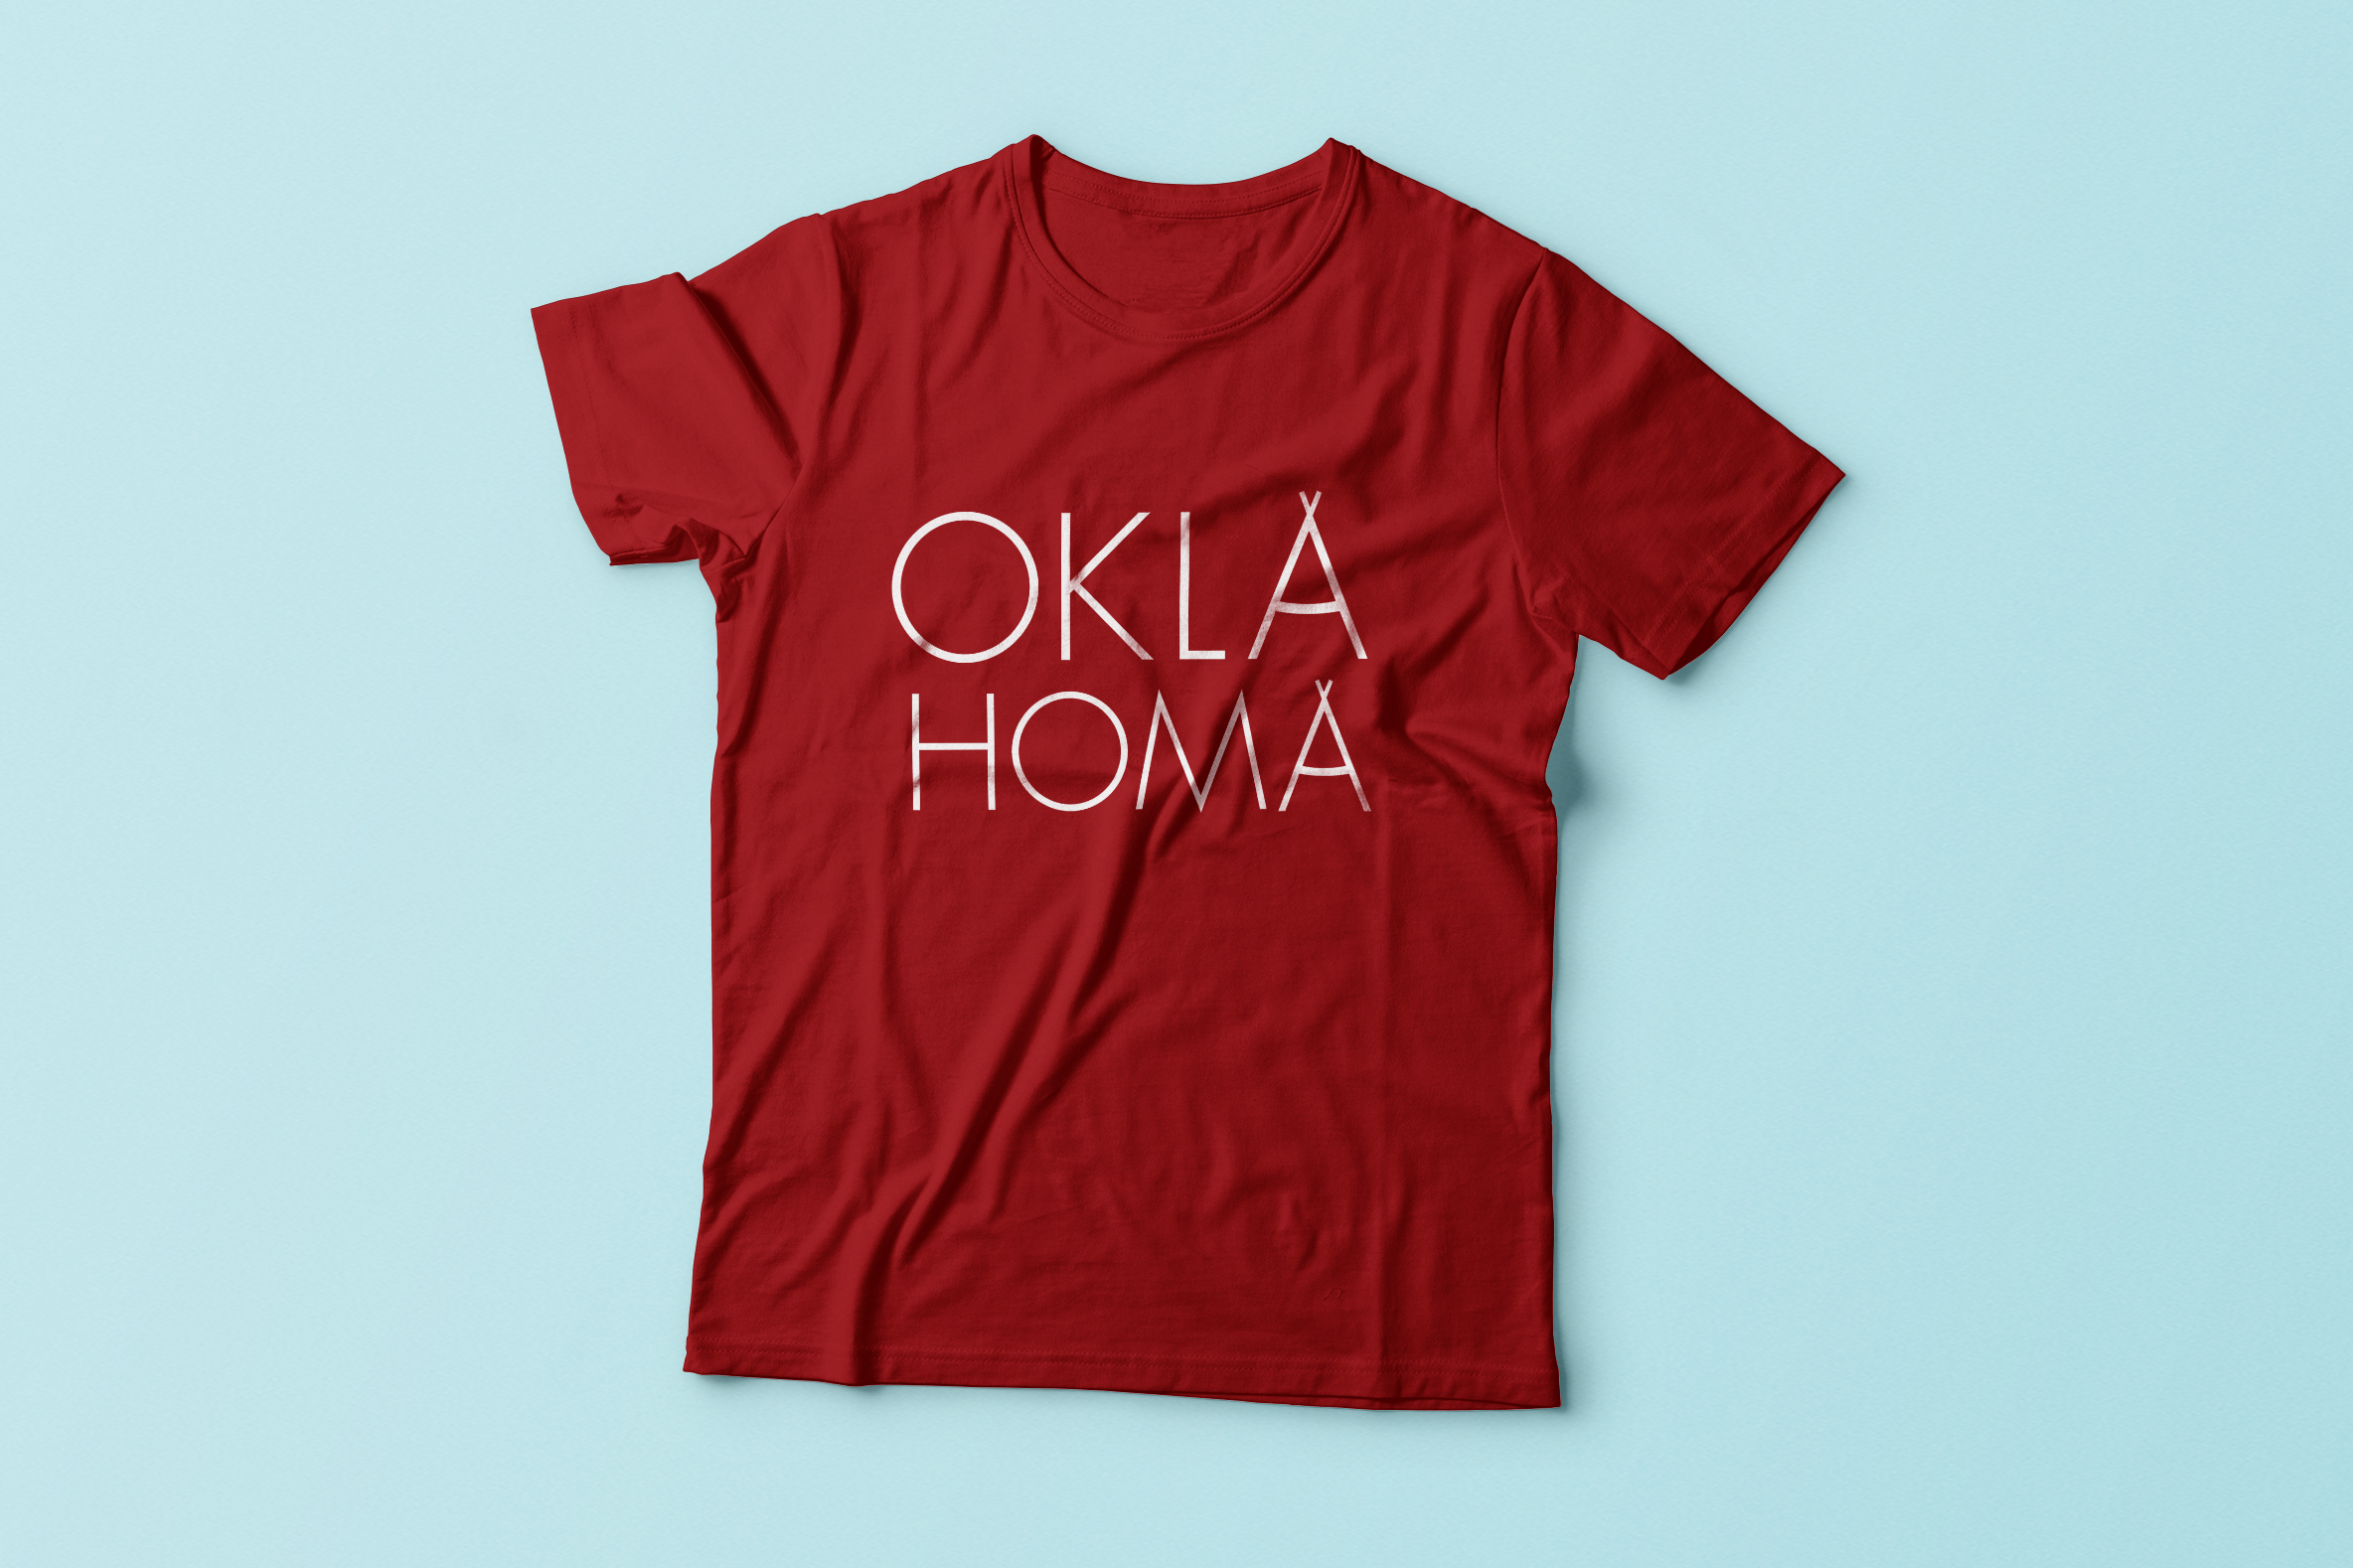 sarah holley design - logos - oklahoma shirt